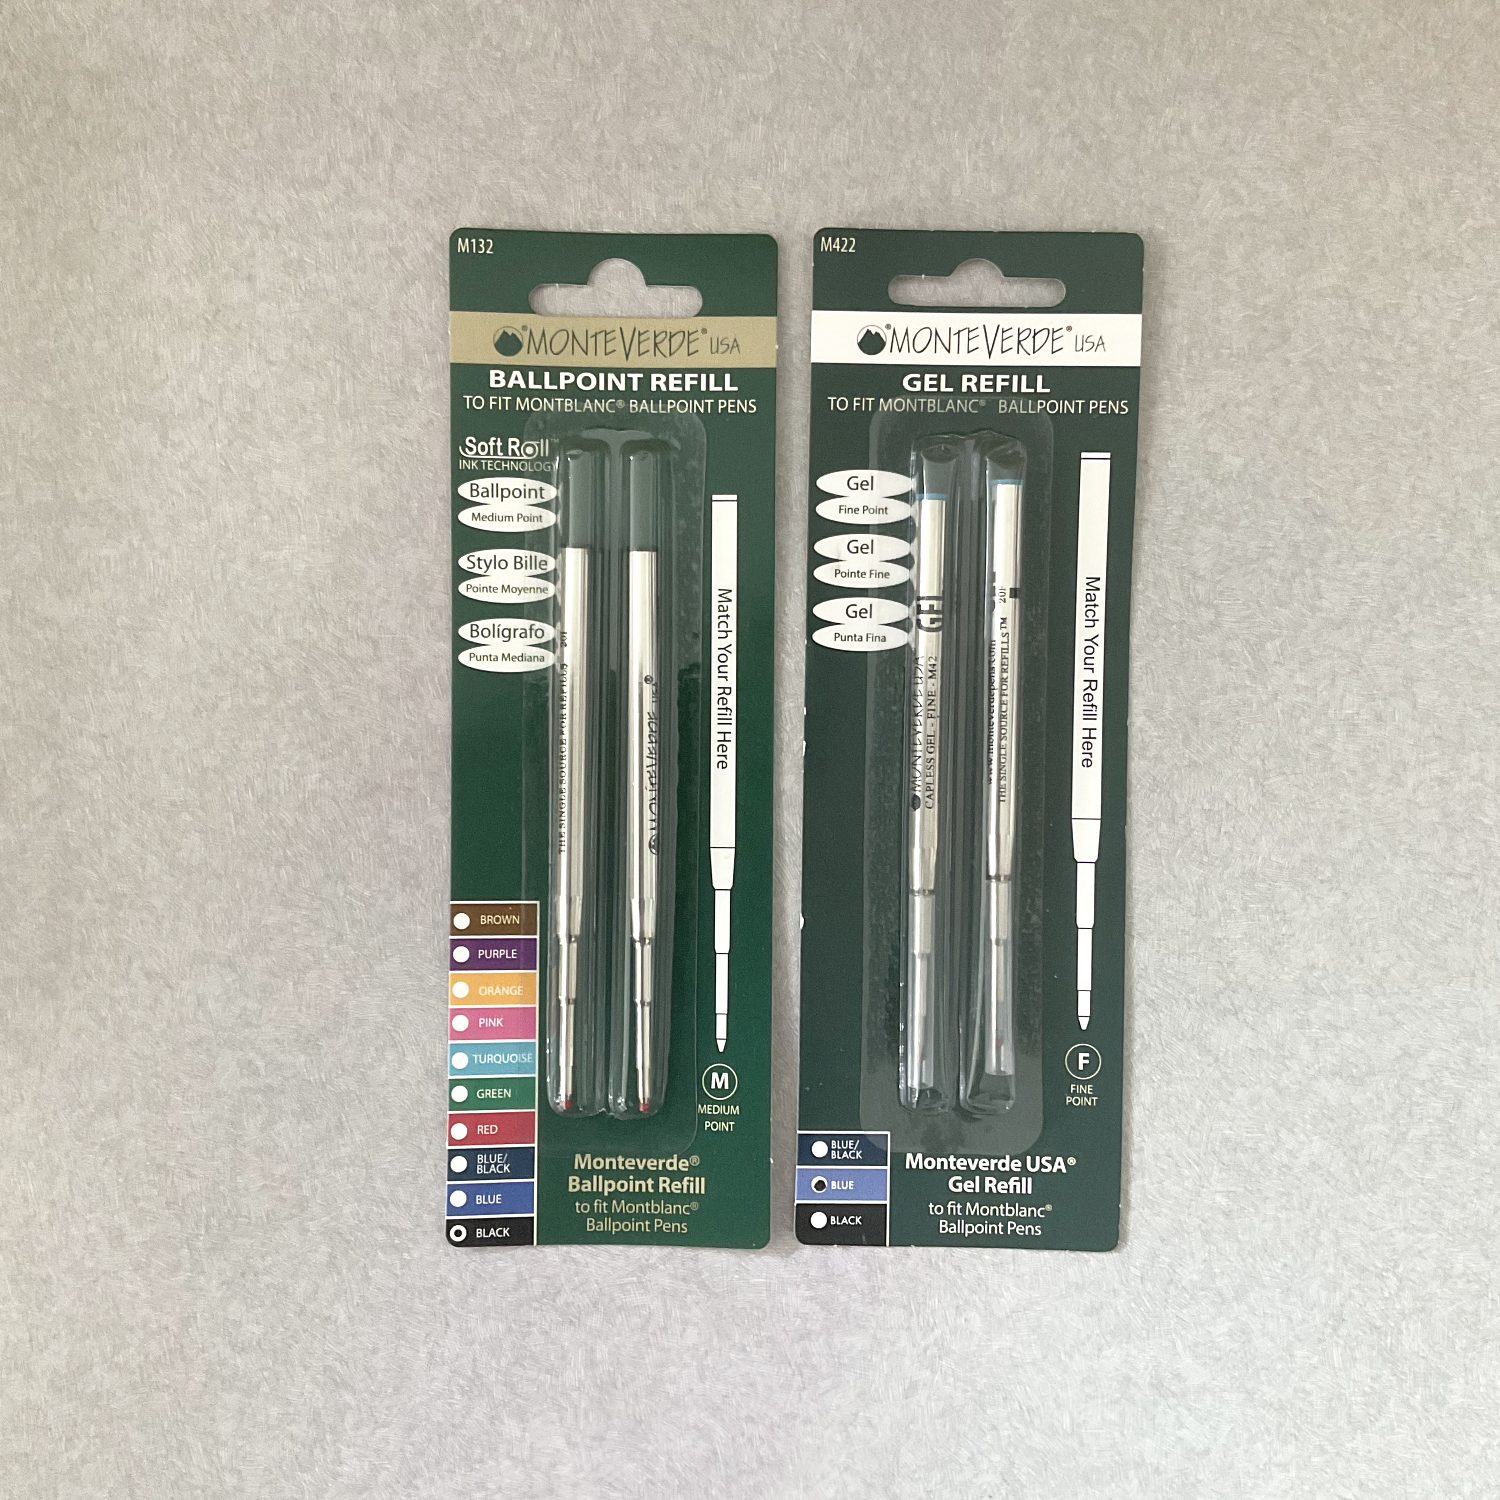 Monteverde Ballpoint Pen Refill to fit Montblanc Ballpoint Pens